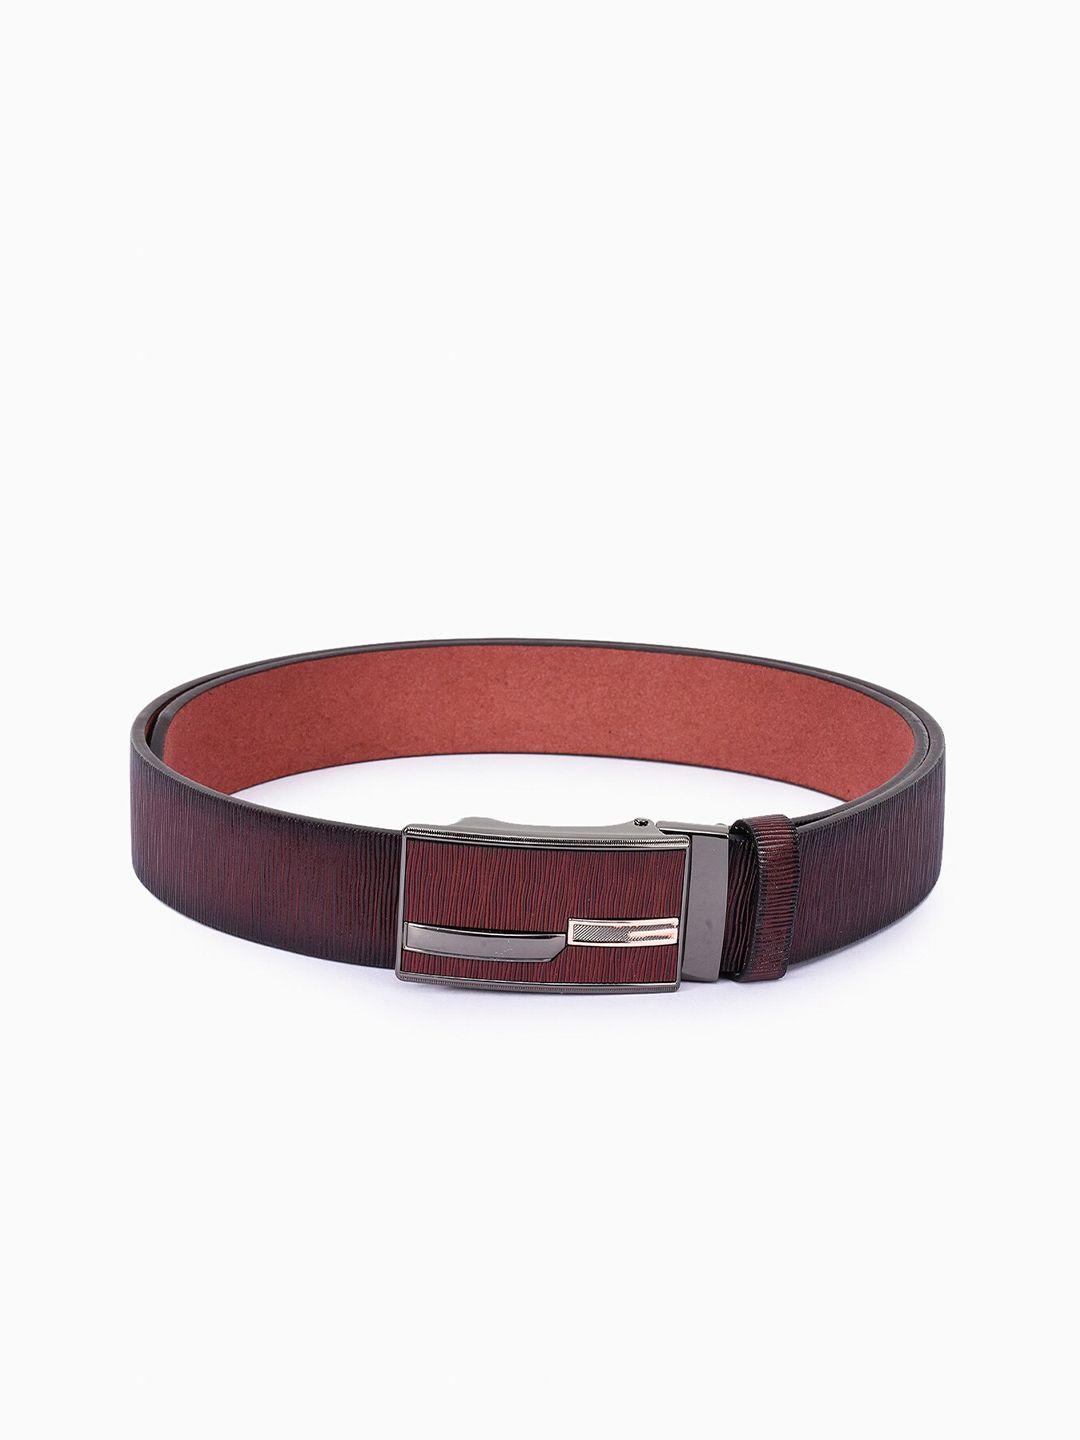 buckleup men maroon leather belt